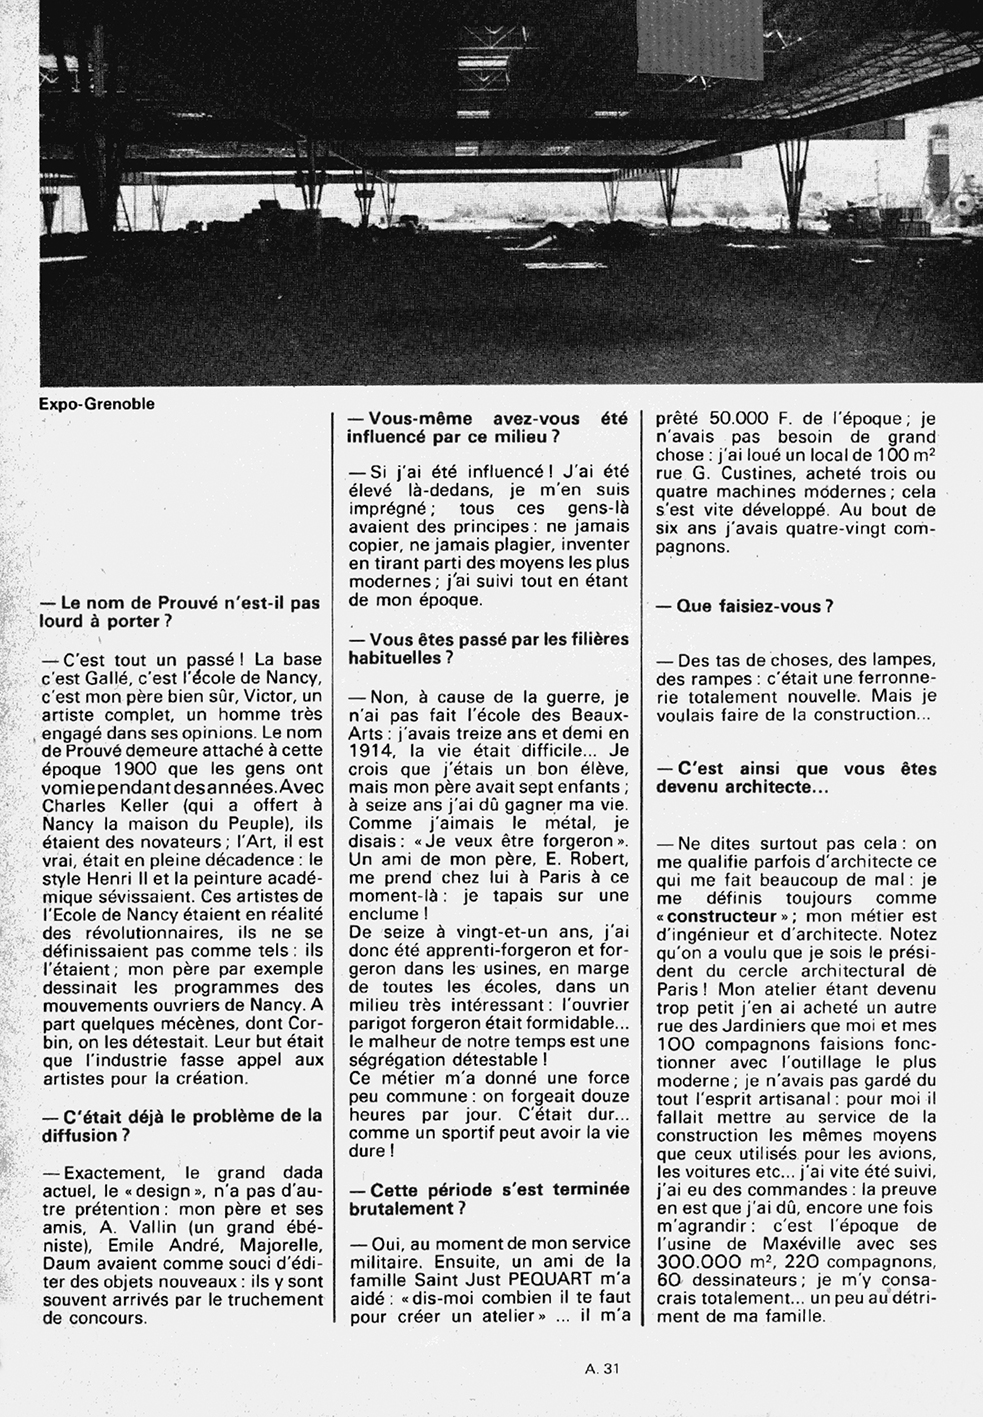 « L’architecture : une industrie », A 31, <i>mensuel de la Lorraine et du Luxembourg,</i>no. 13 (feb. 1974).